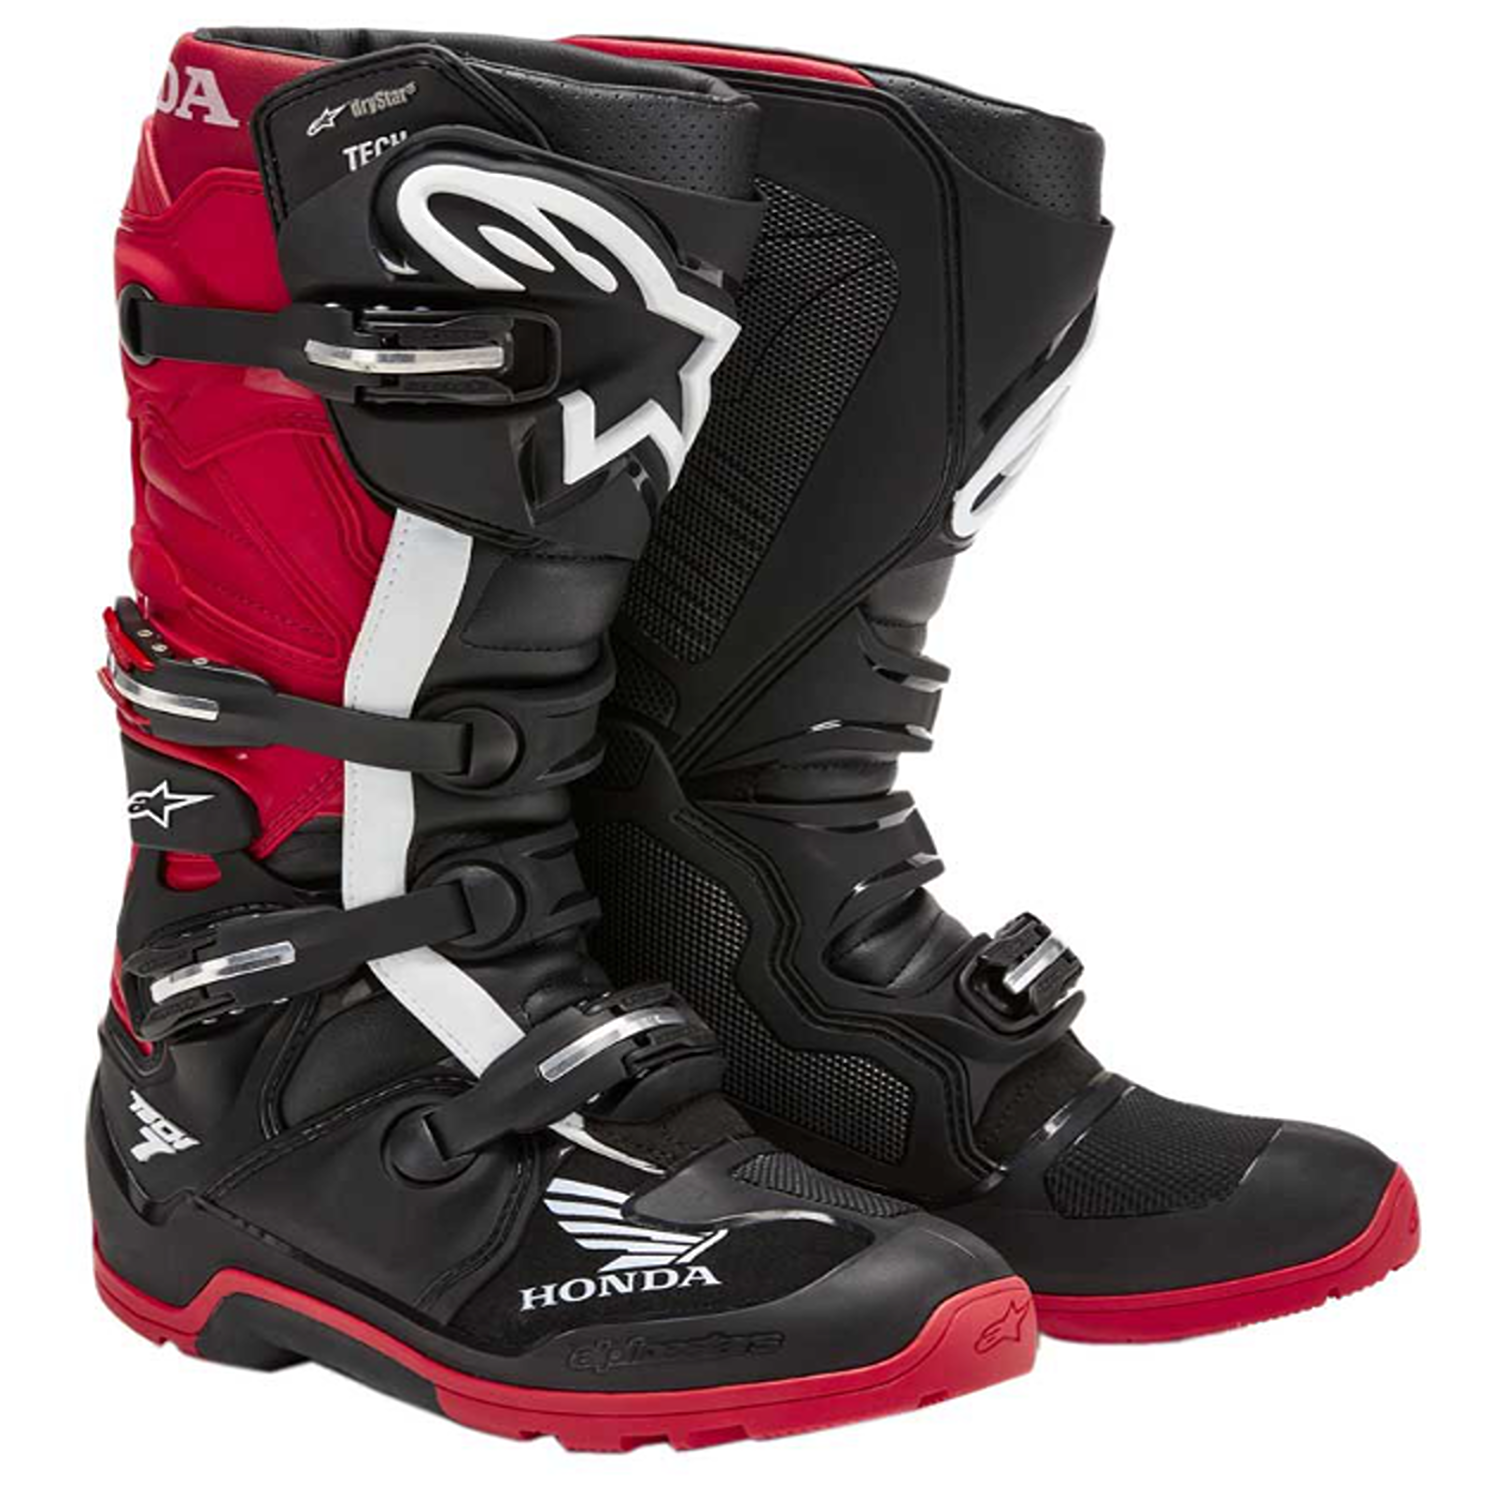 Image of Alpinestars Honda Tech 7 Enduro Drystar Boots Black Bright Red Talla US 11